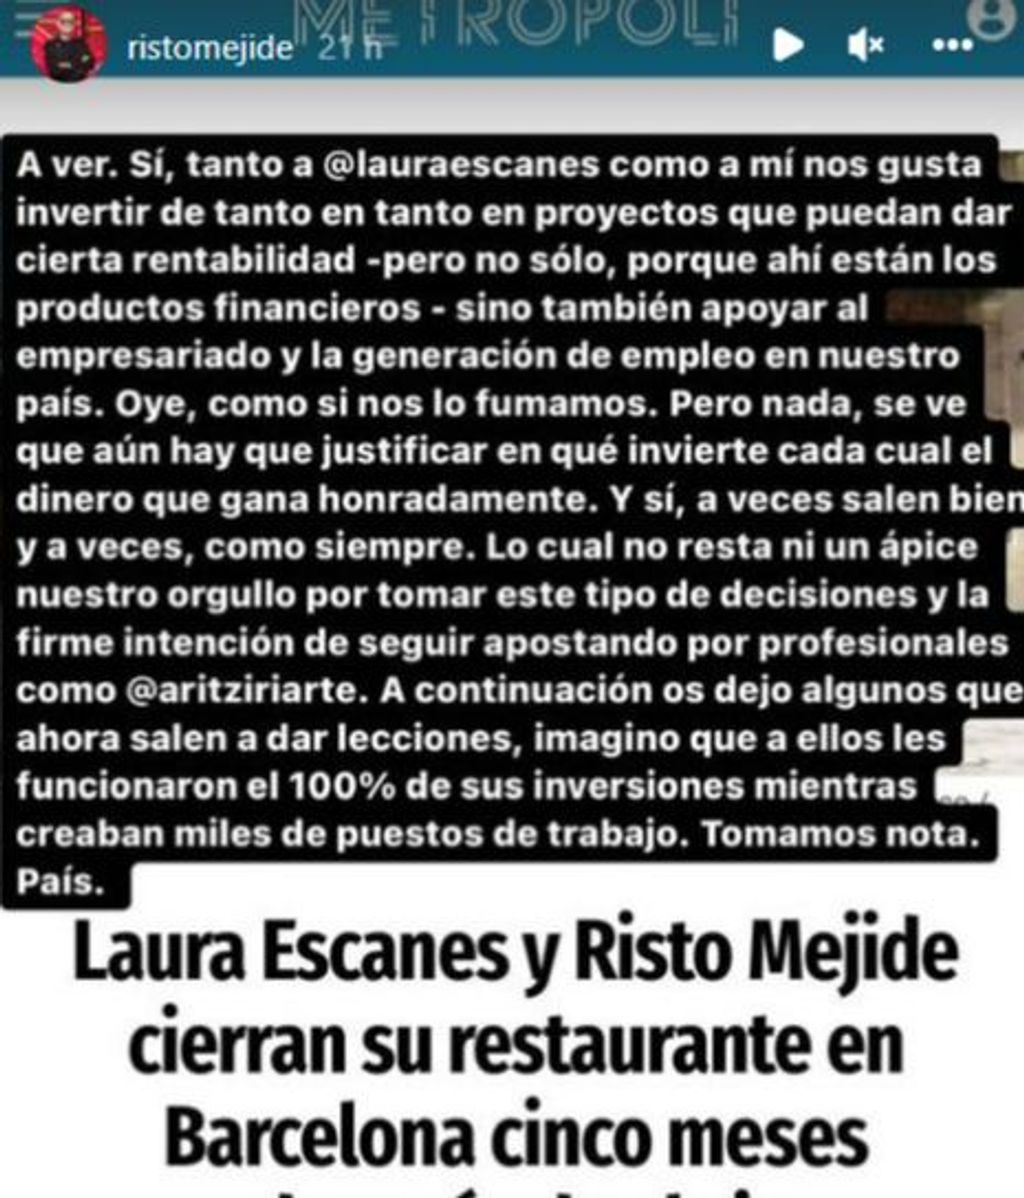 Risto Mejide responde a quienes les critica por su fallida inversión con Laura Escanes